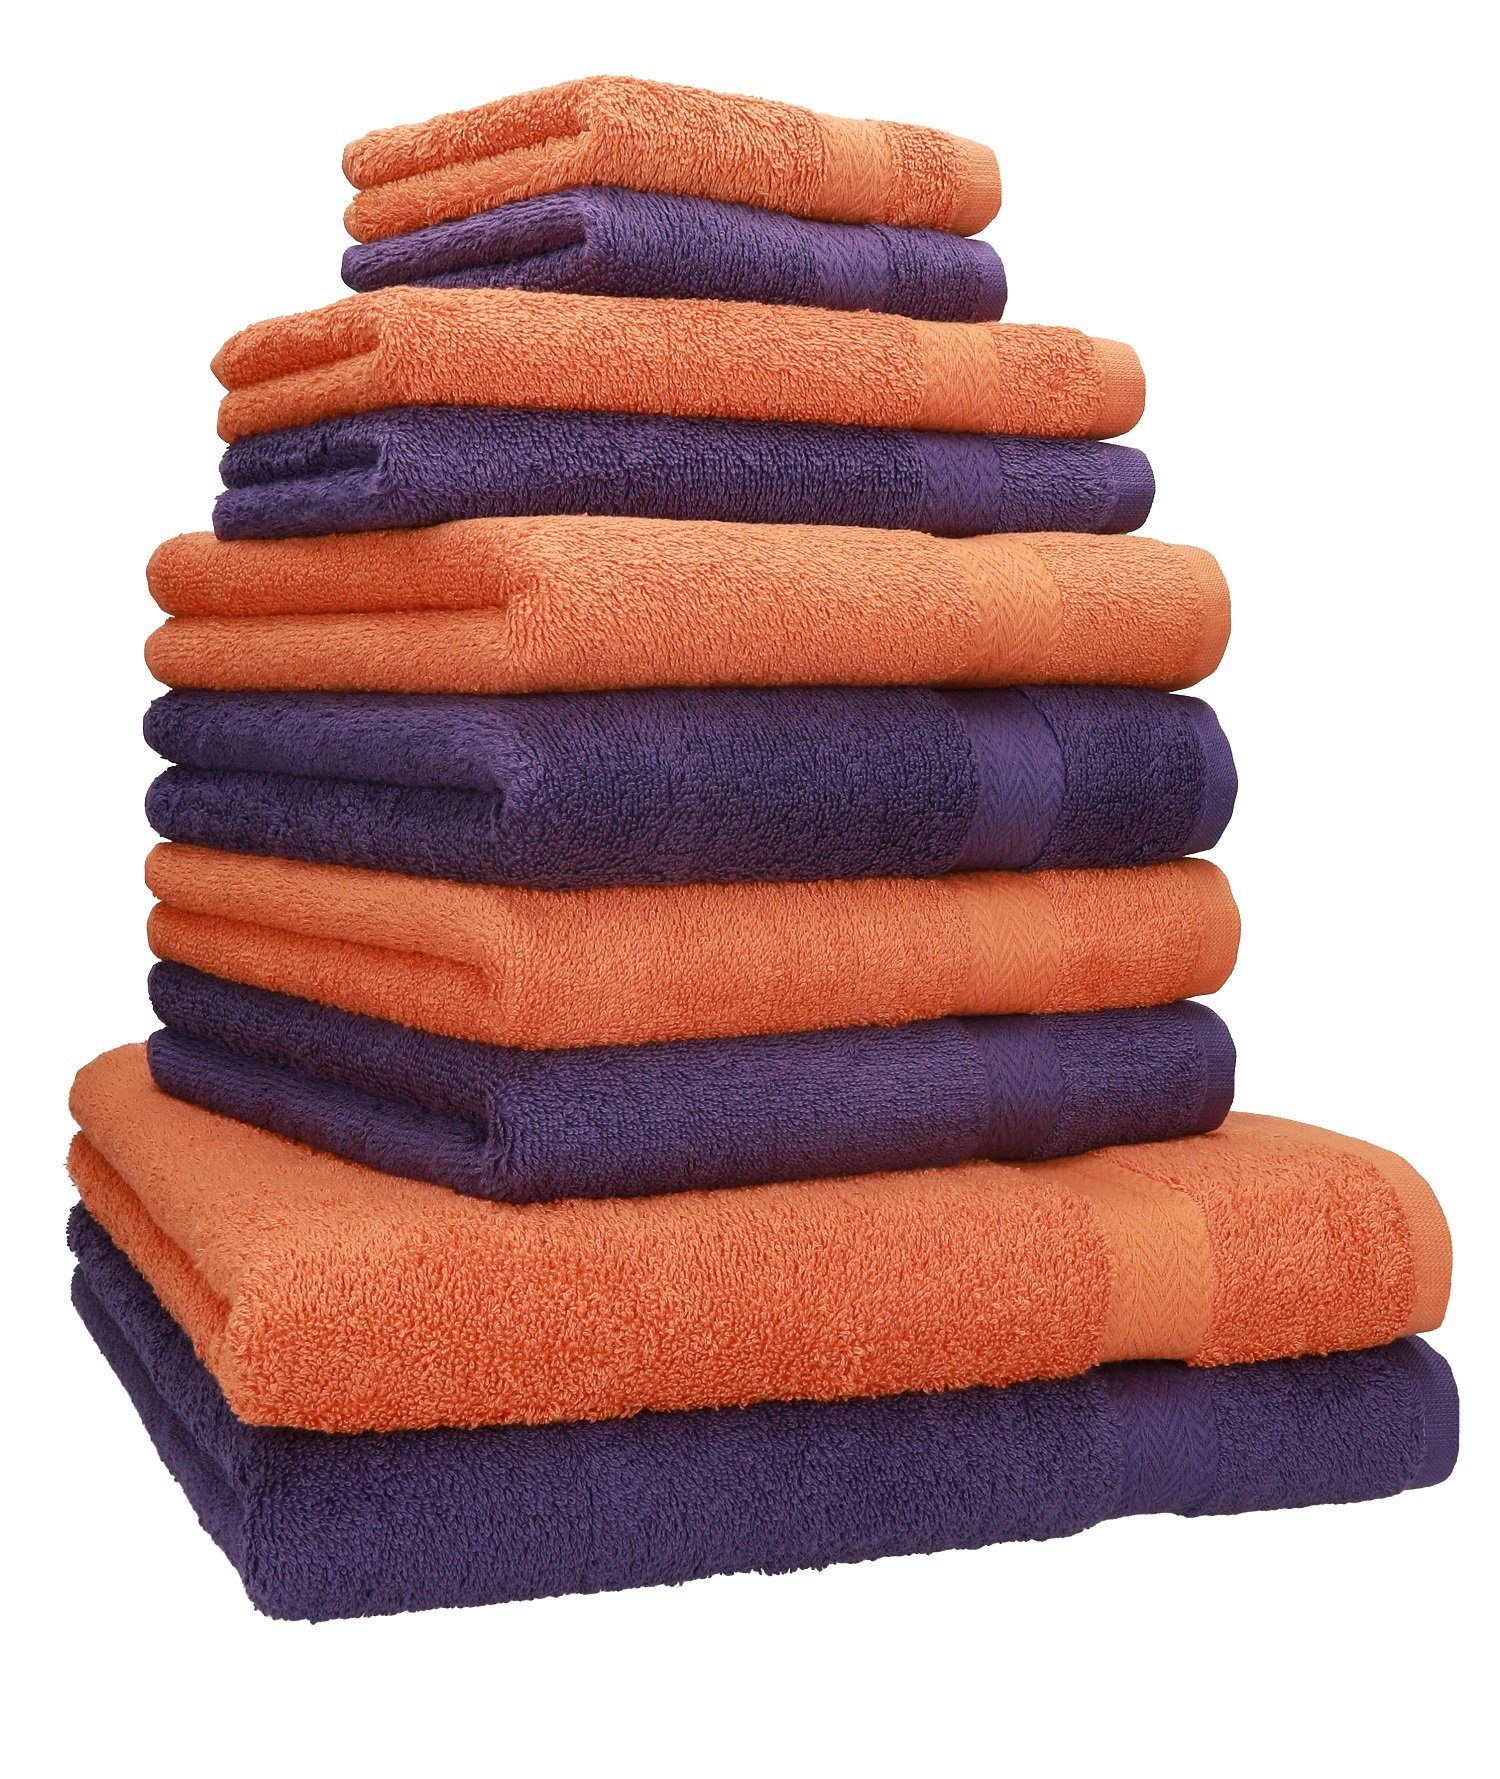 Betz Handtuch Set 10-TLG. Handtuch-Set Classic Farbe lila und orange, 100% Baumwolle